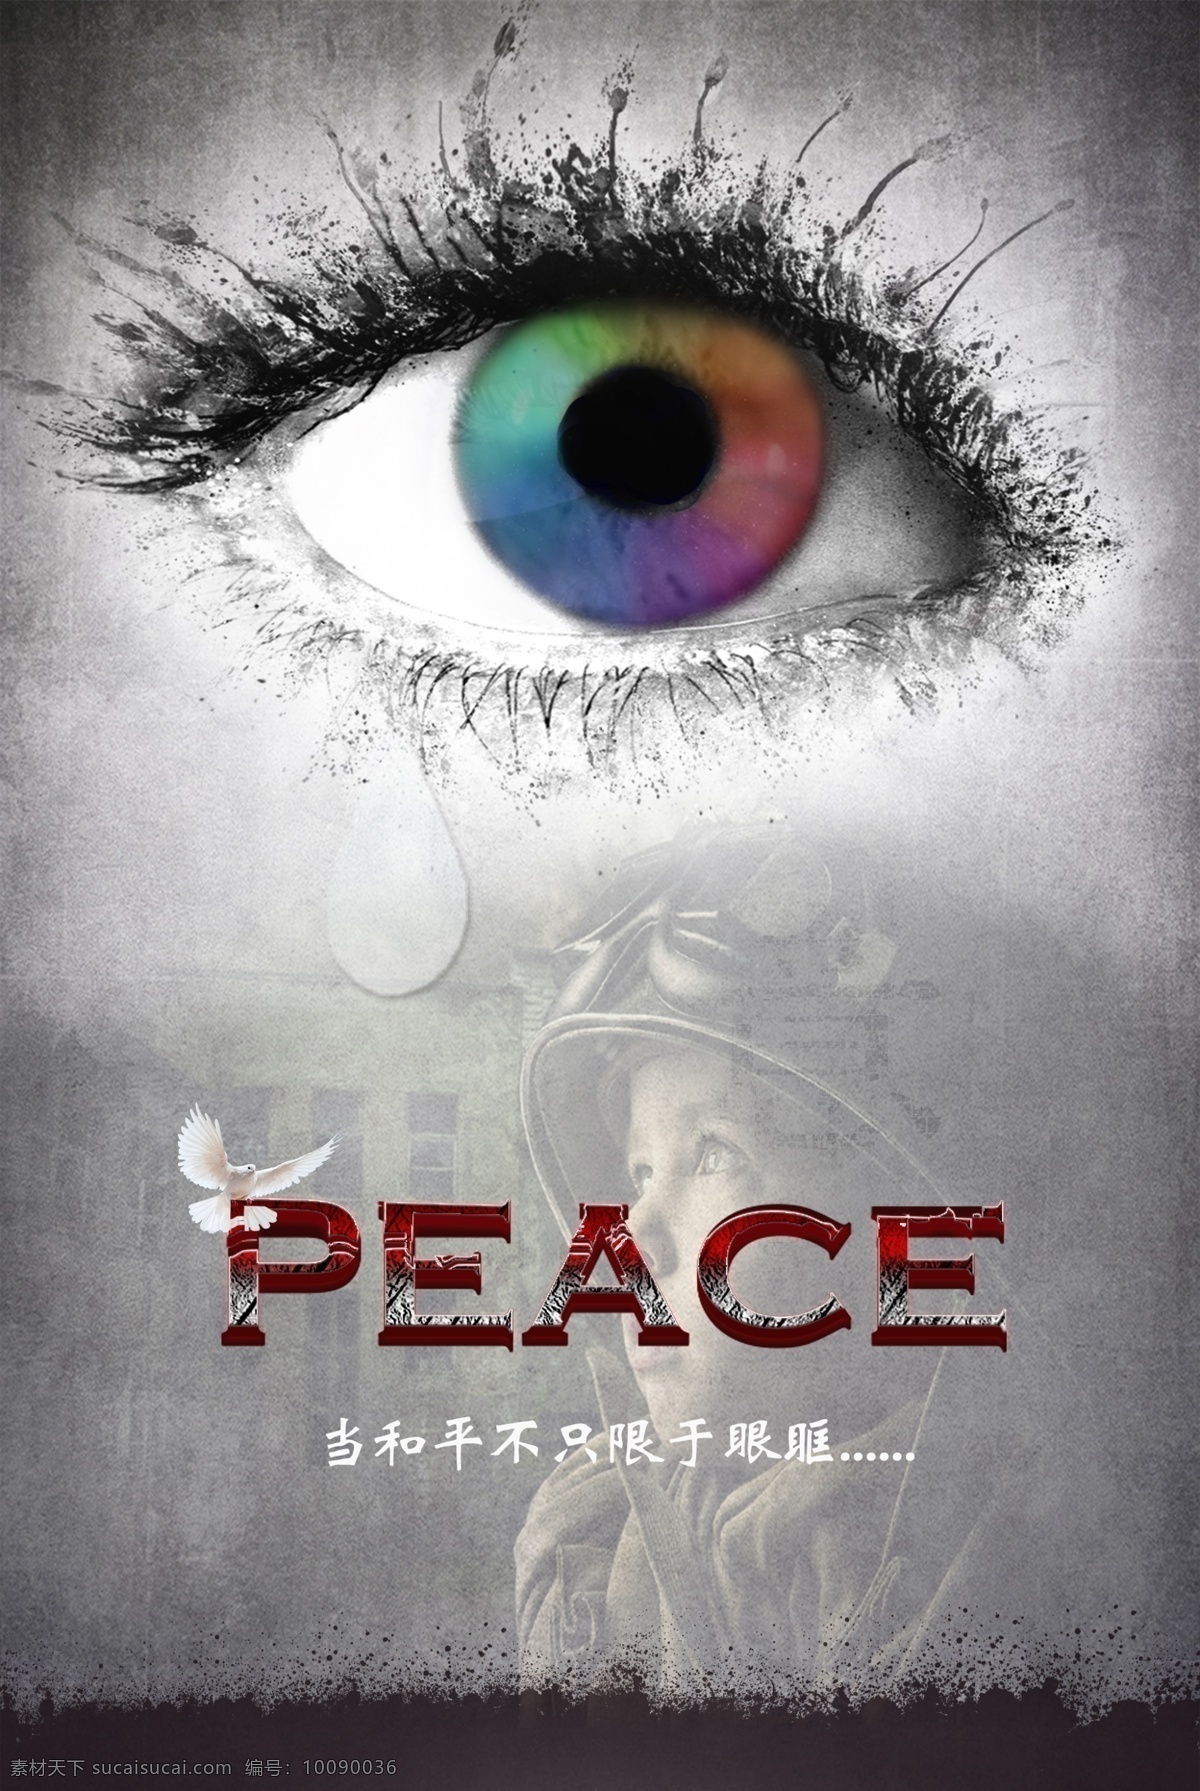 和平 视角 公益 海报 创意 眼睛 黑暗 渴望 和平鸽 眼泪 peace 世界